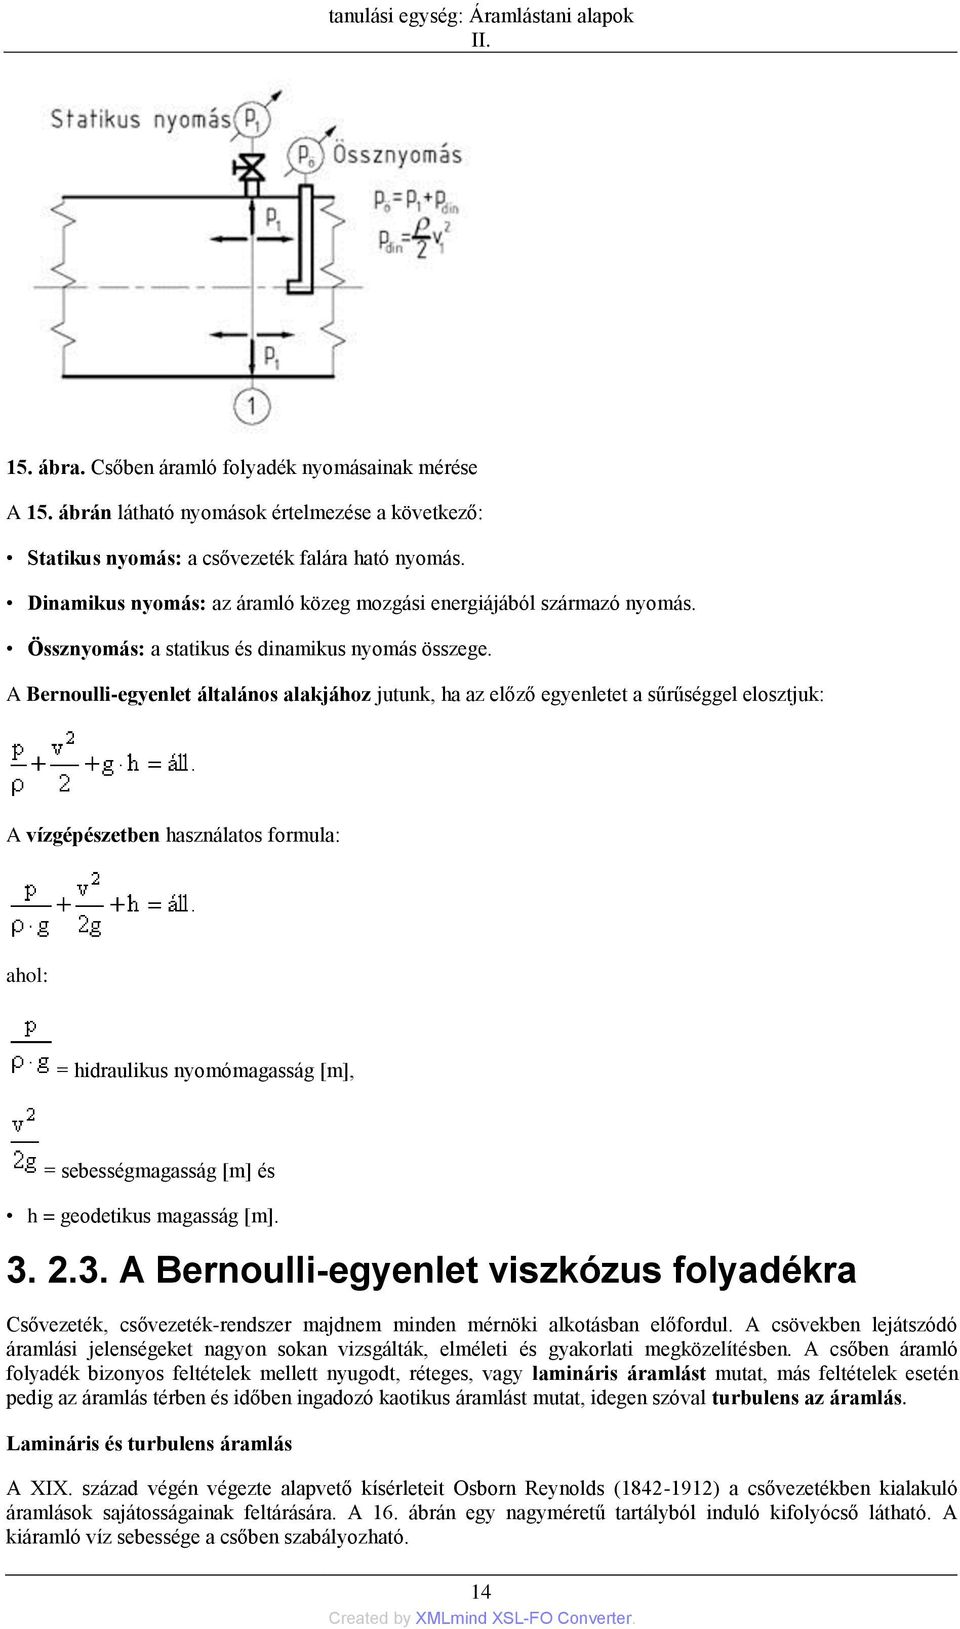 A Bernoulli-egyenlet általános alakjához jutunk, ha az előző egyenletet a sűrűséggel elosztjuk: A vízgépészetben használatos formula: ahol: = hidraulikus nyomómagasság [m], = sebességmagasság [m] és